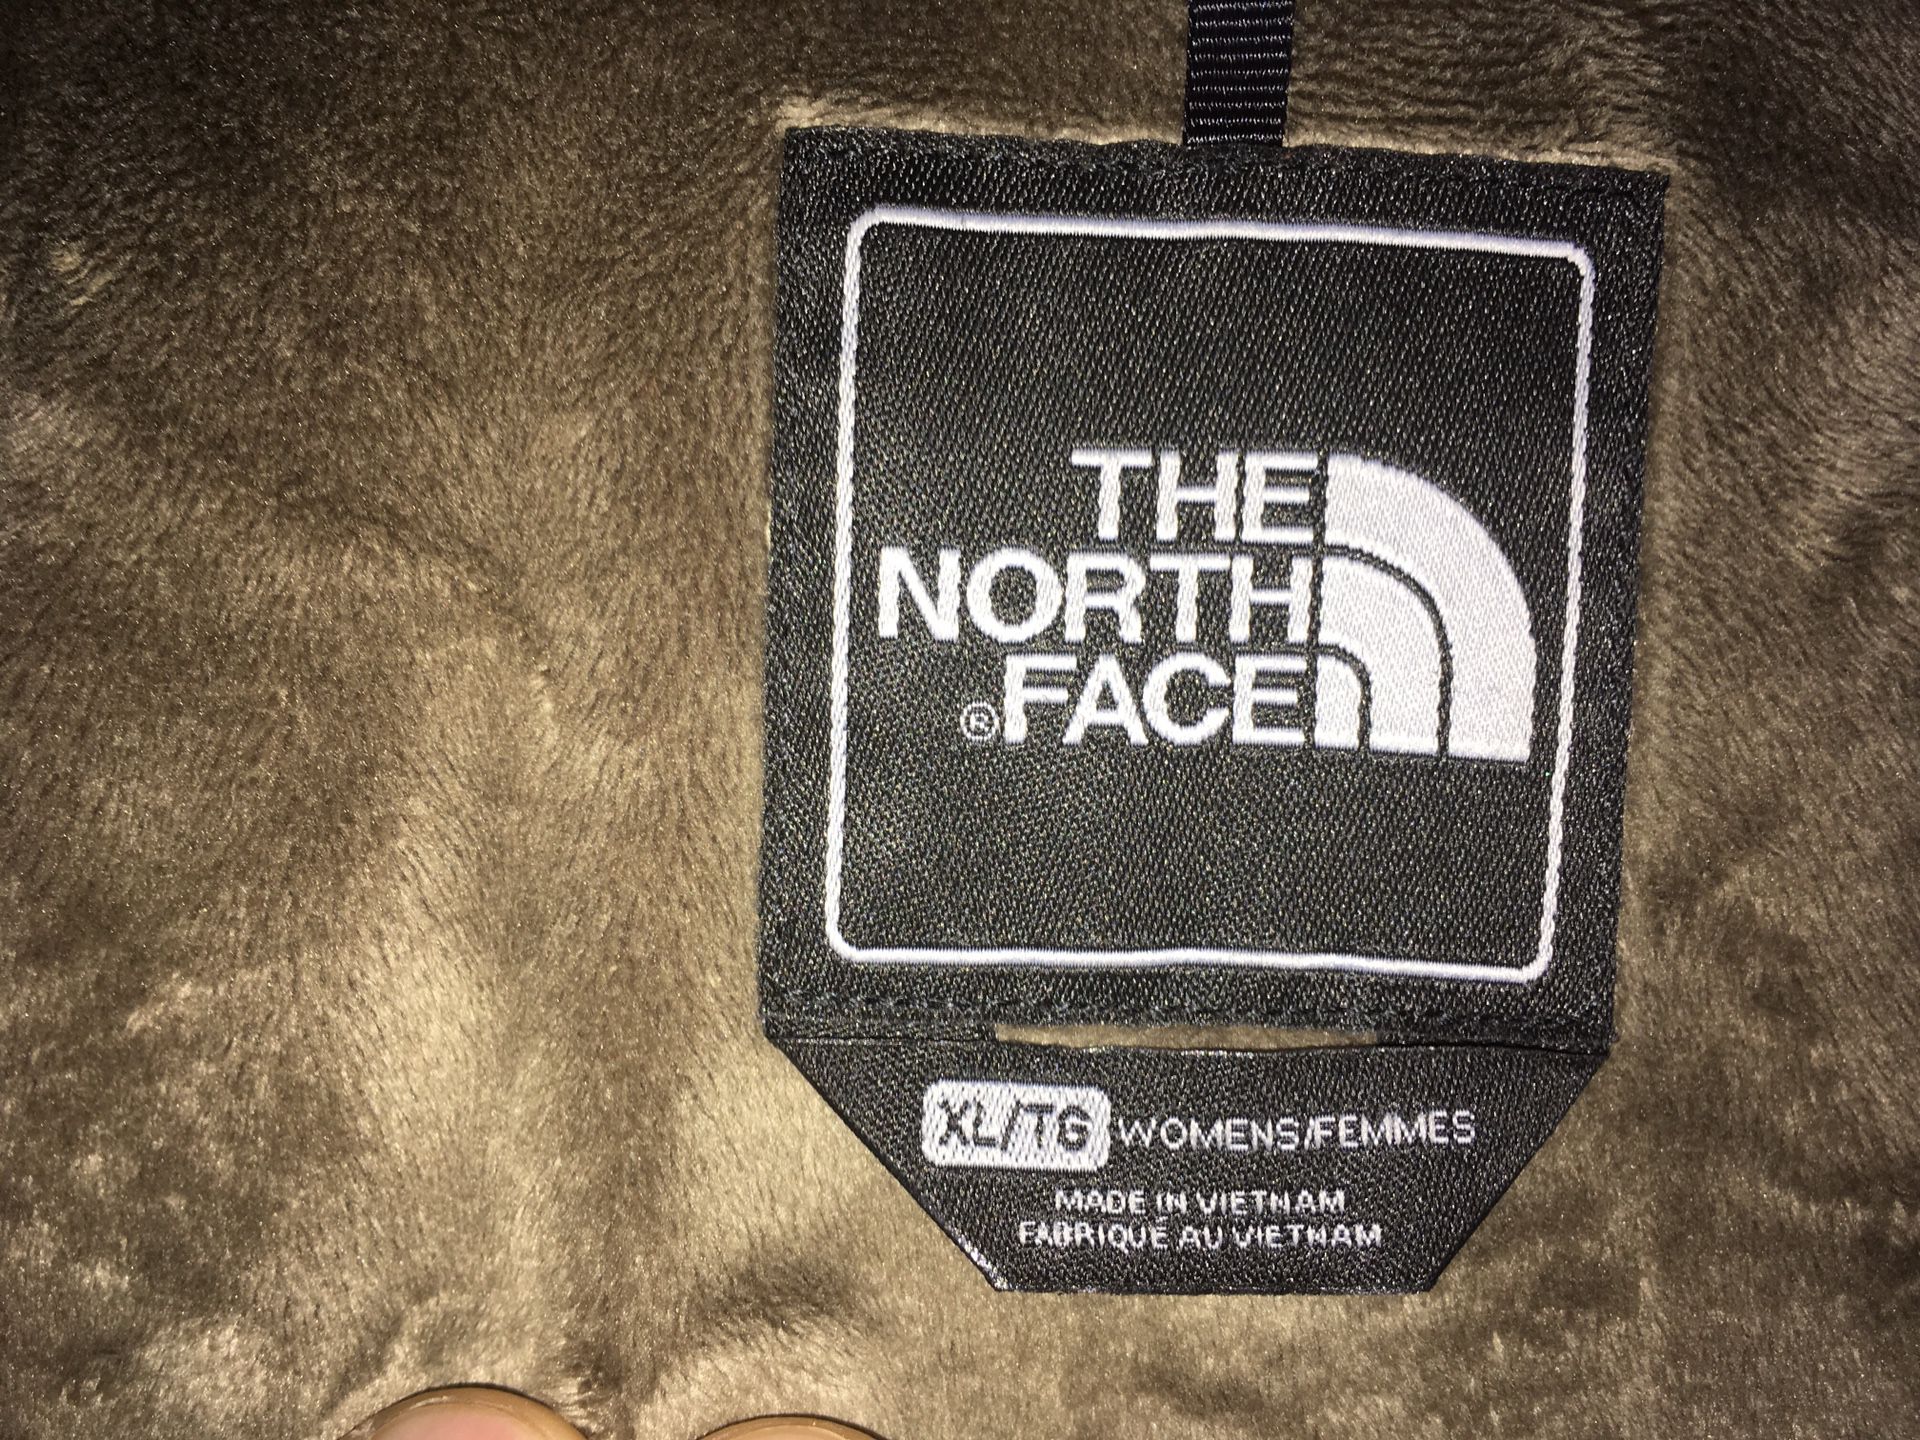 Northface jacket